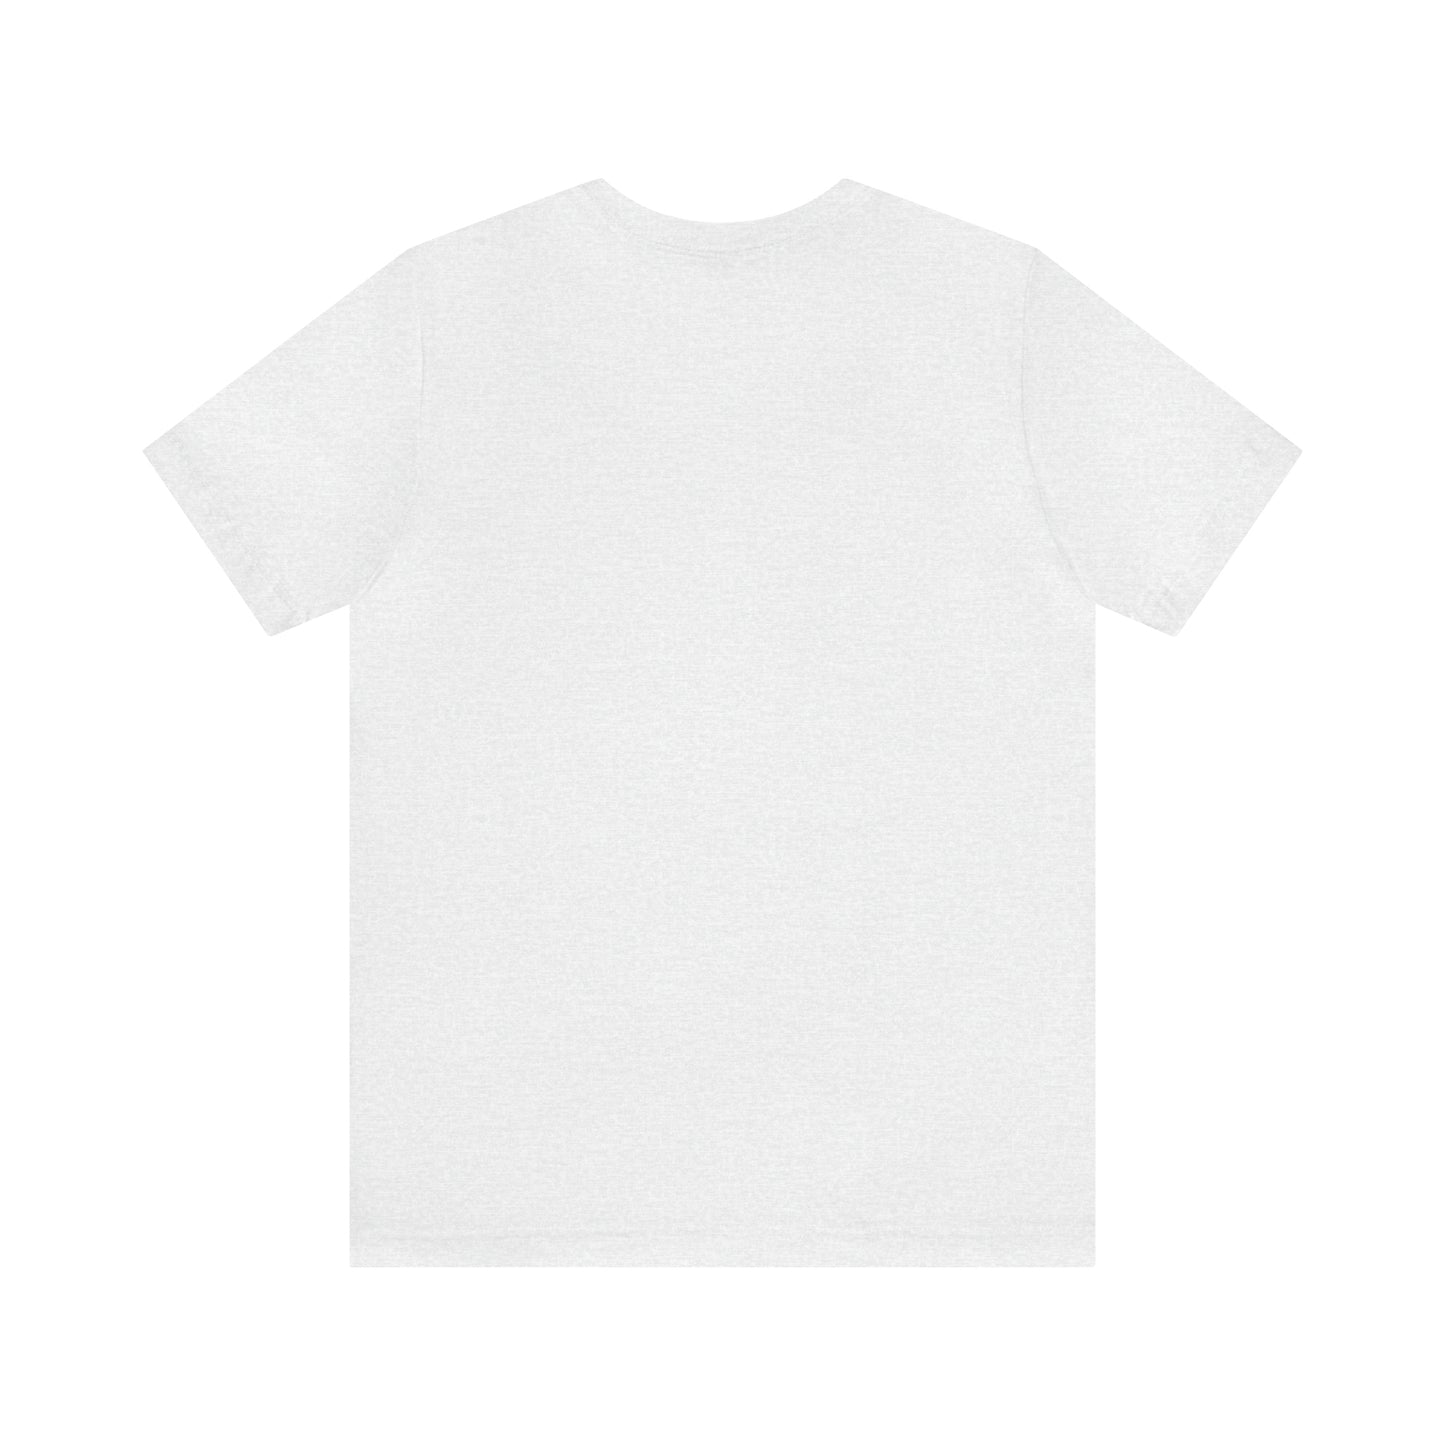 Lancaster, Mass Pickleball Short Sleeve T-Shirt